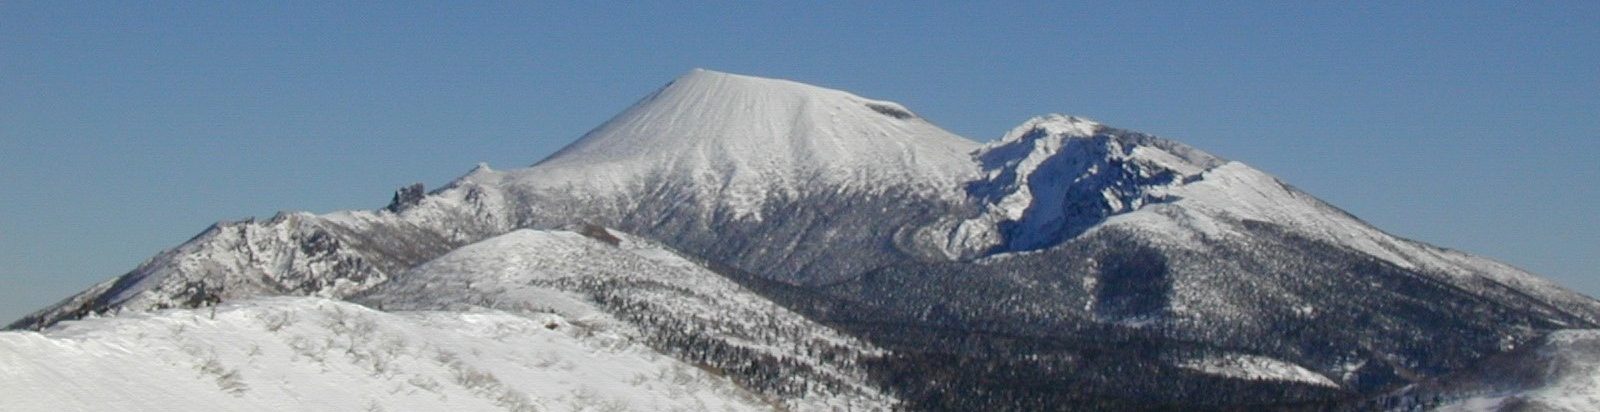 冬の岩手山